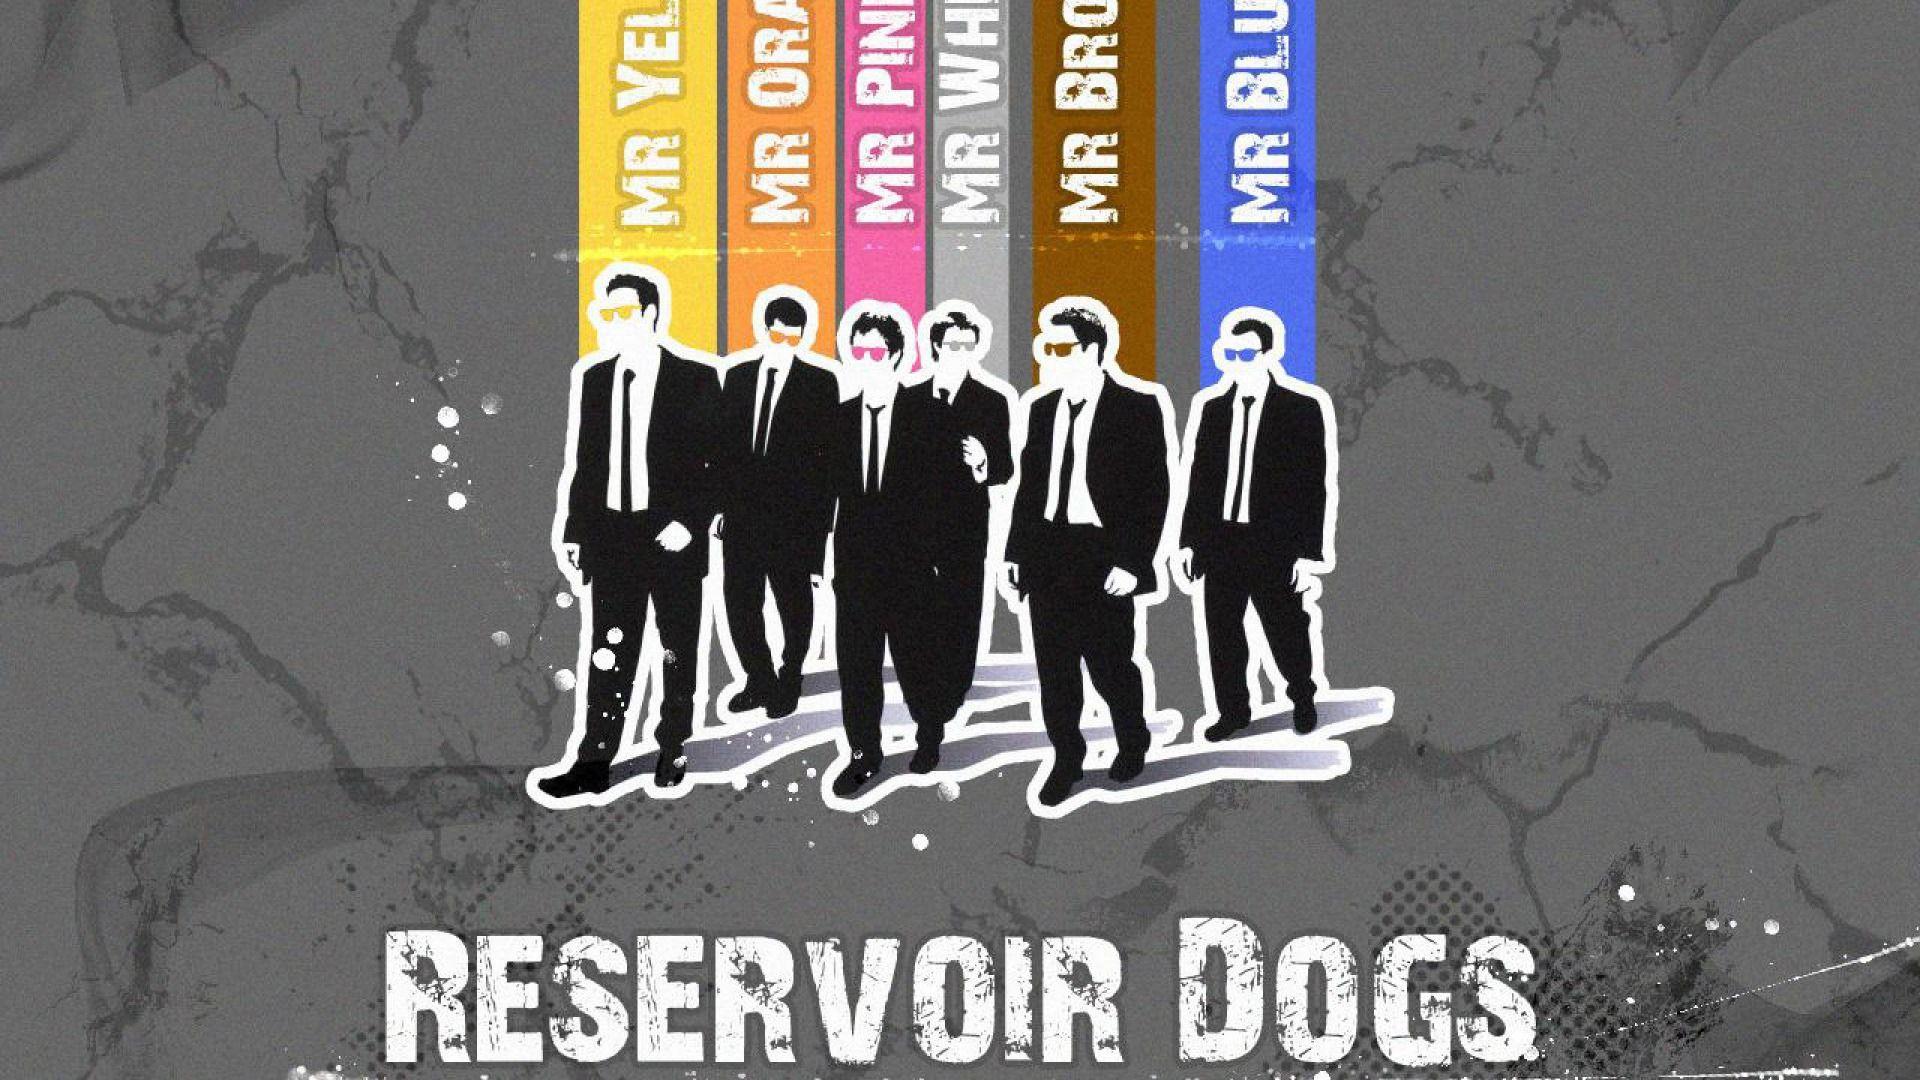 Reservoir Dogs 1920 x 1080 Wallpaper